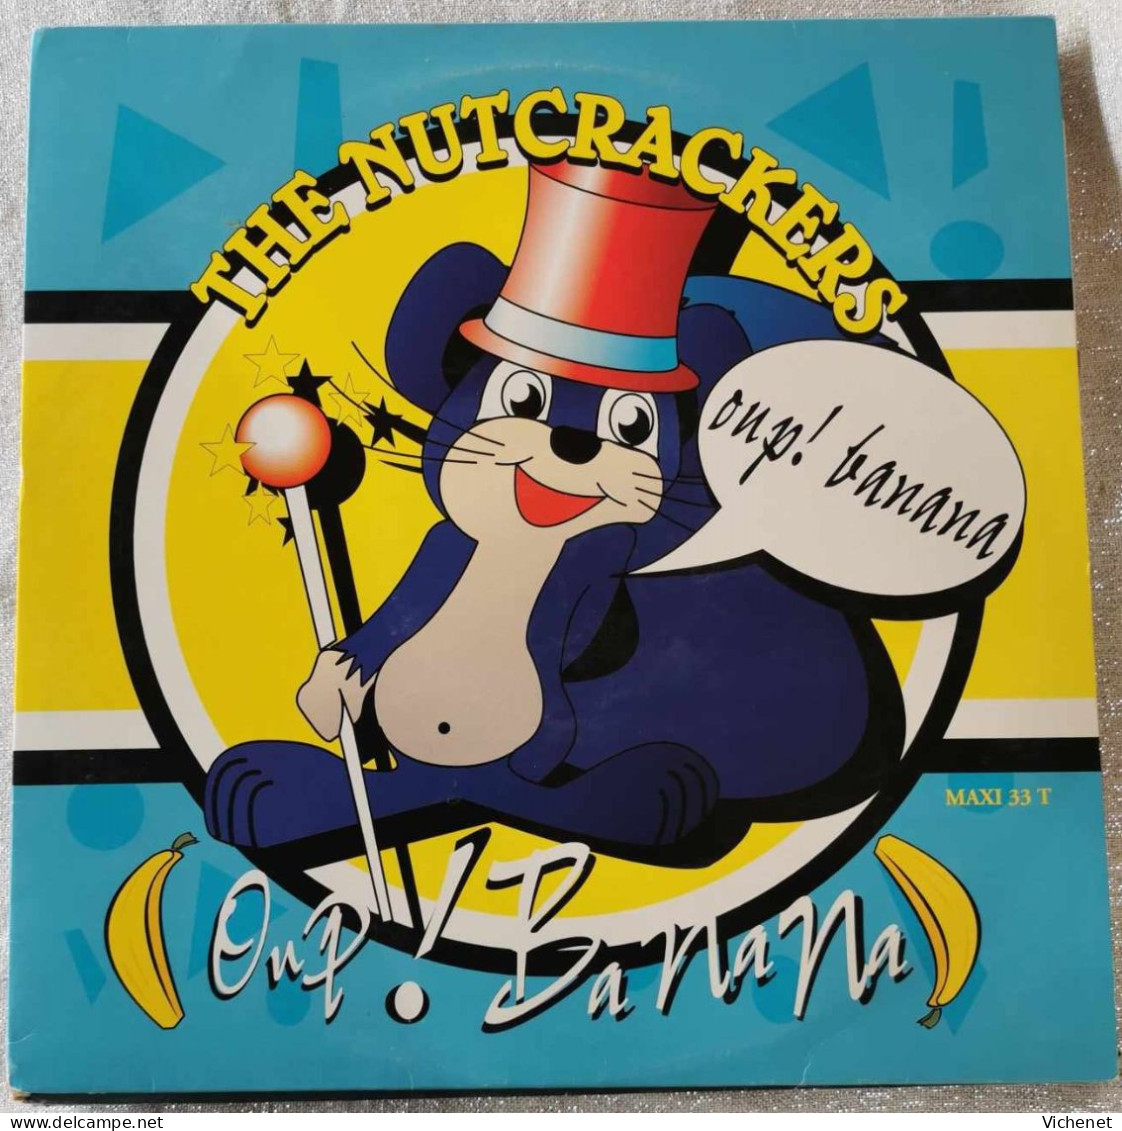 The Nutcrackers – Oup! Banana - Maxi - 45 Toeren - Maxi-Single